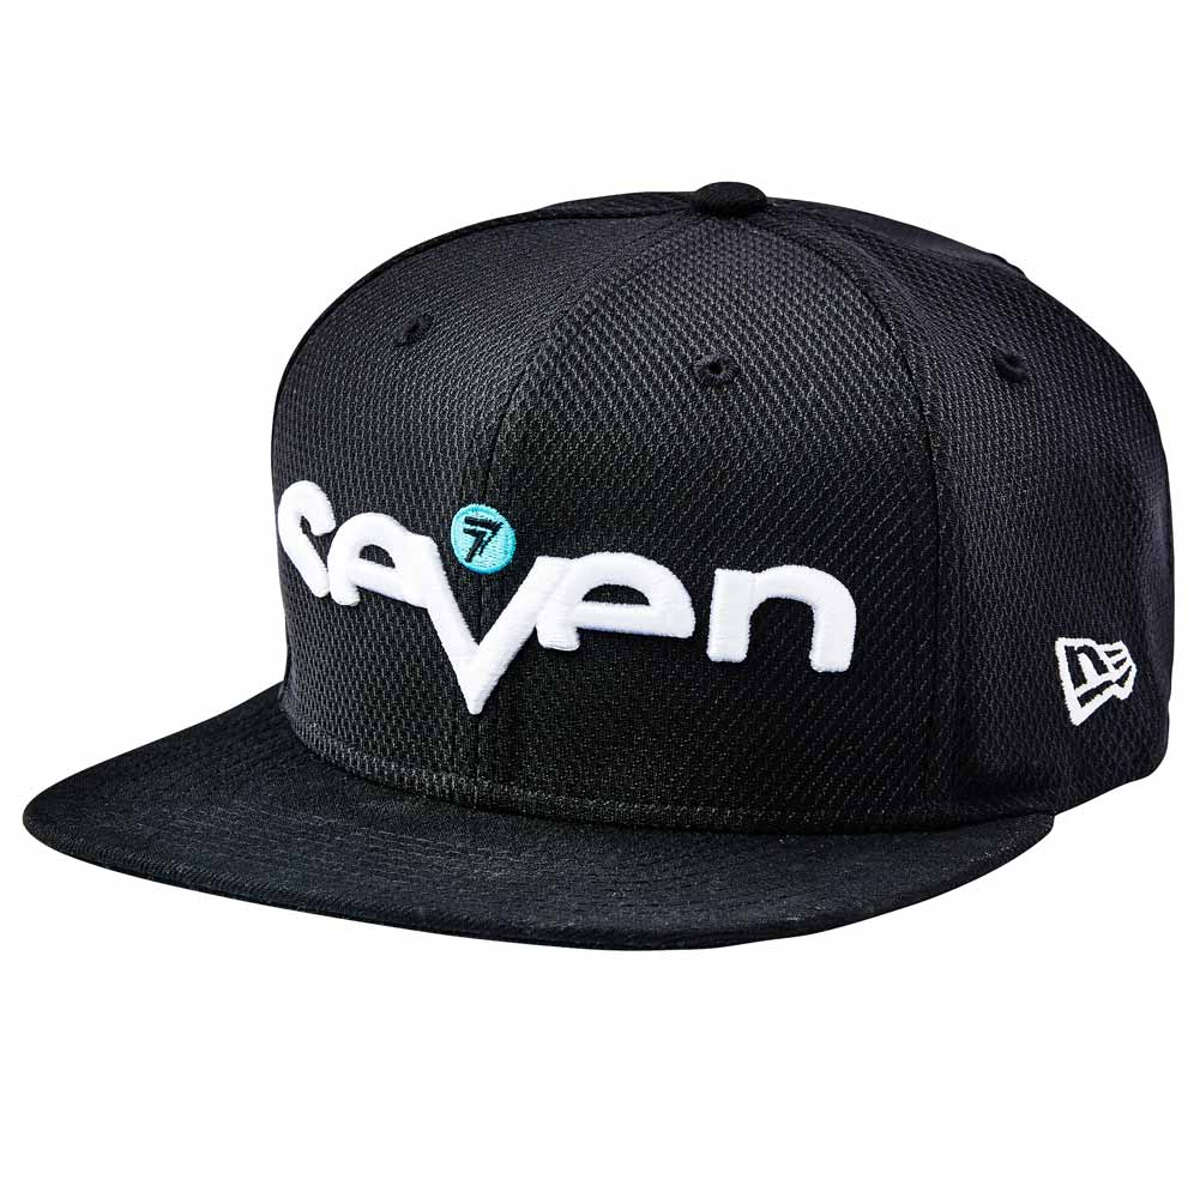 Seven MX Snapback Cap Brand Black/Aqua